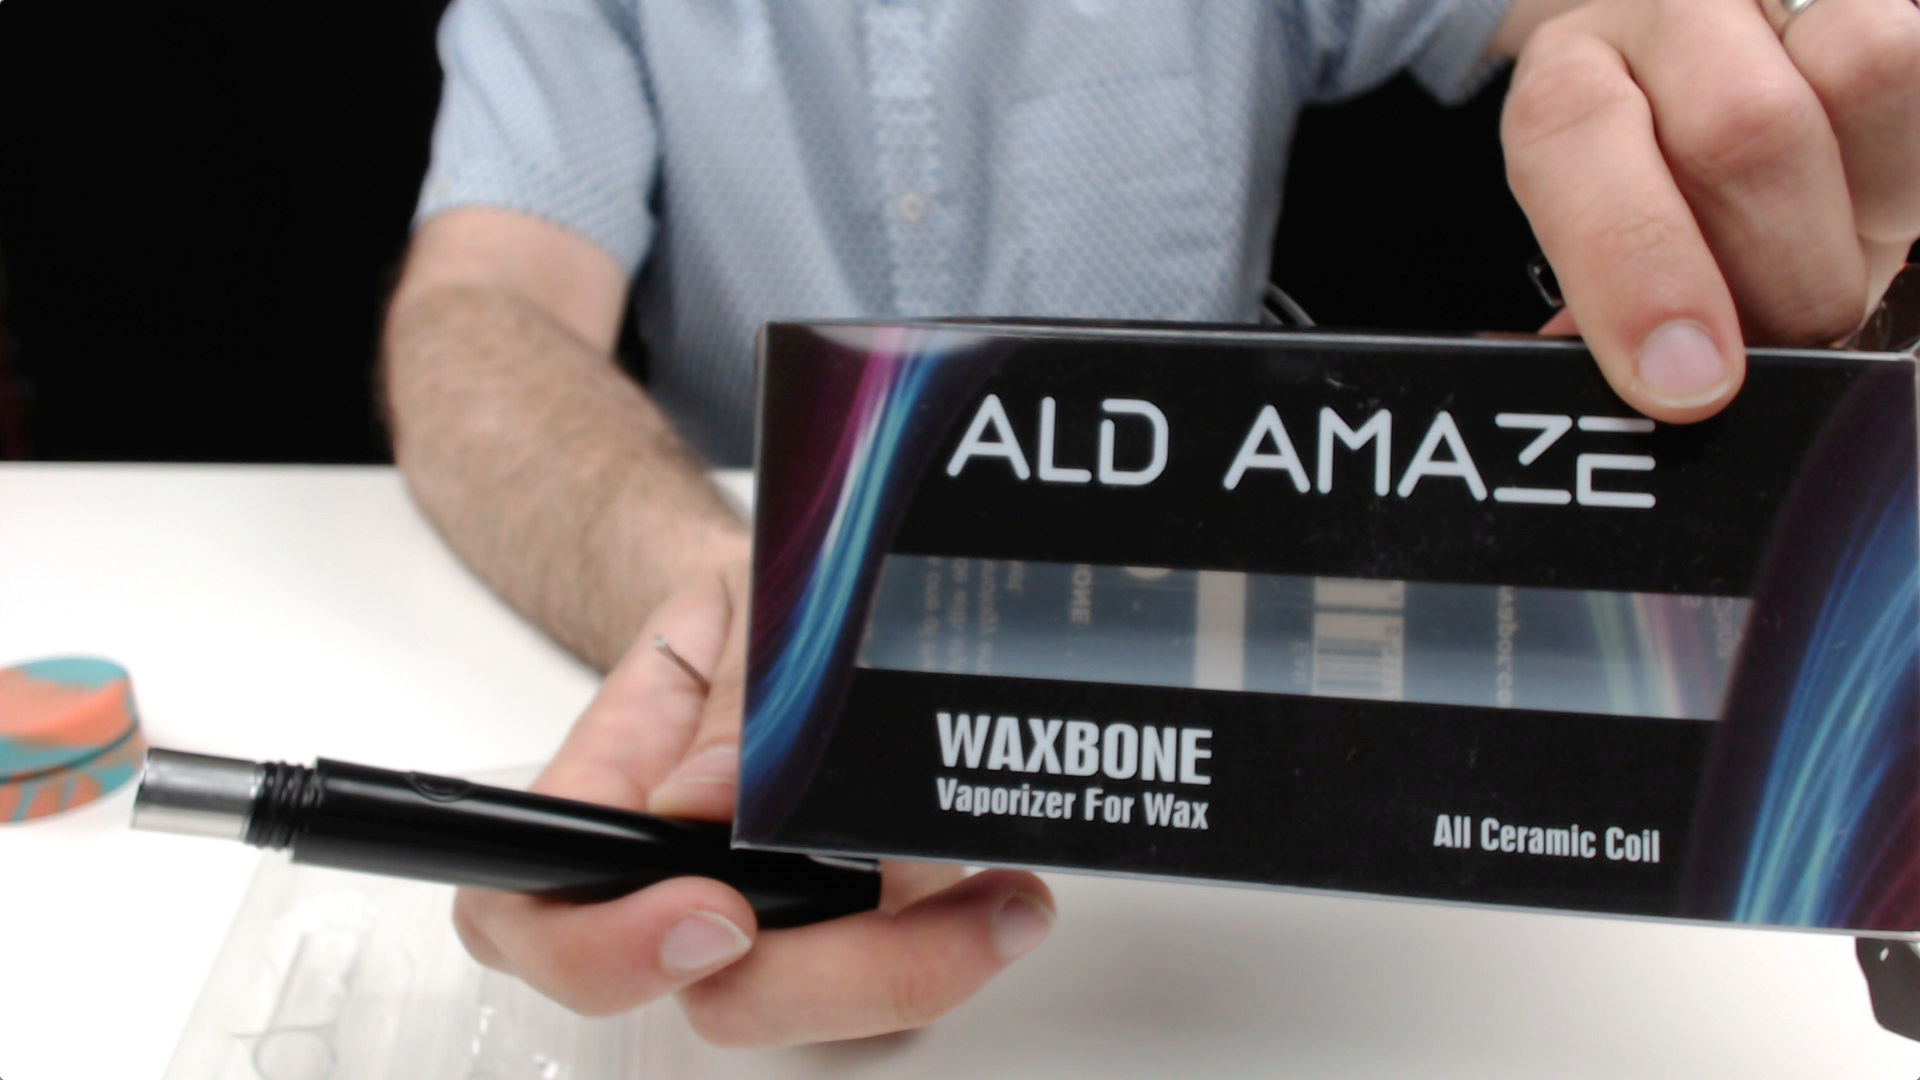 Waxbone by ALD AMAZE Review